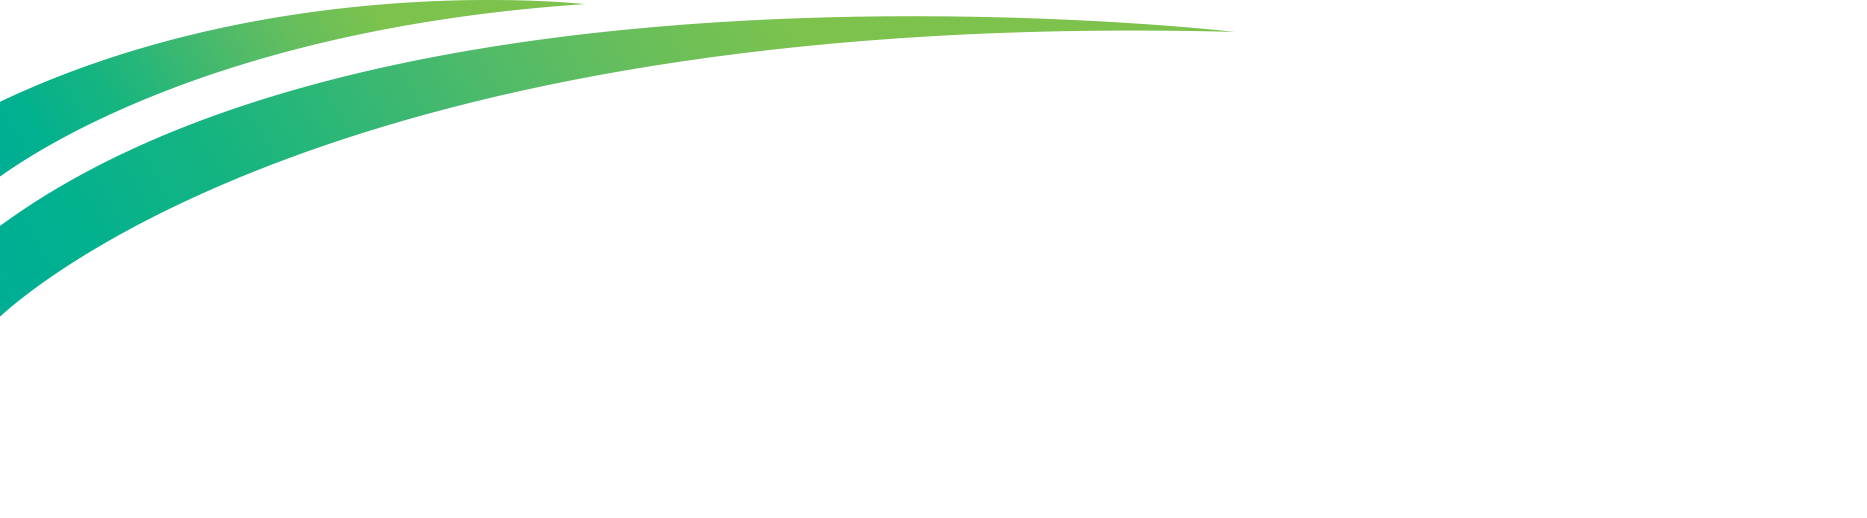 EcoGreen